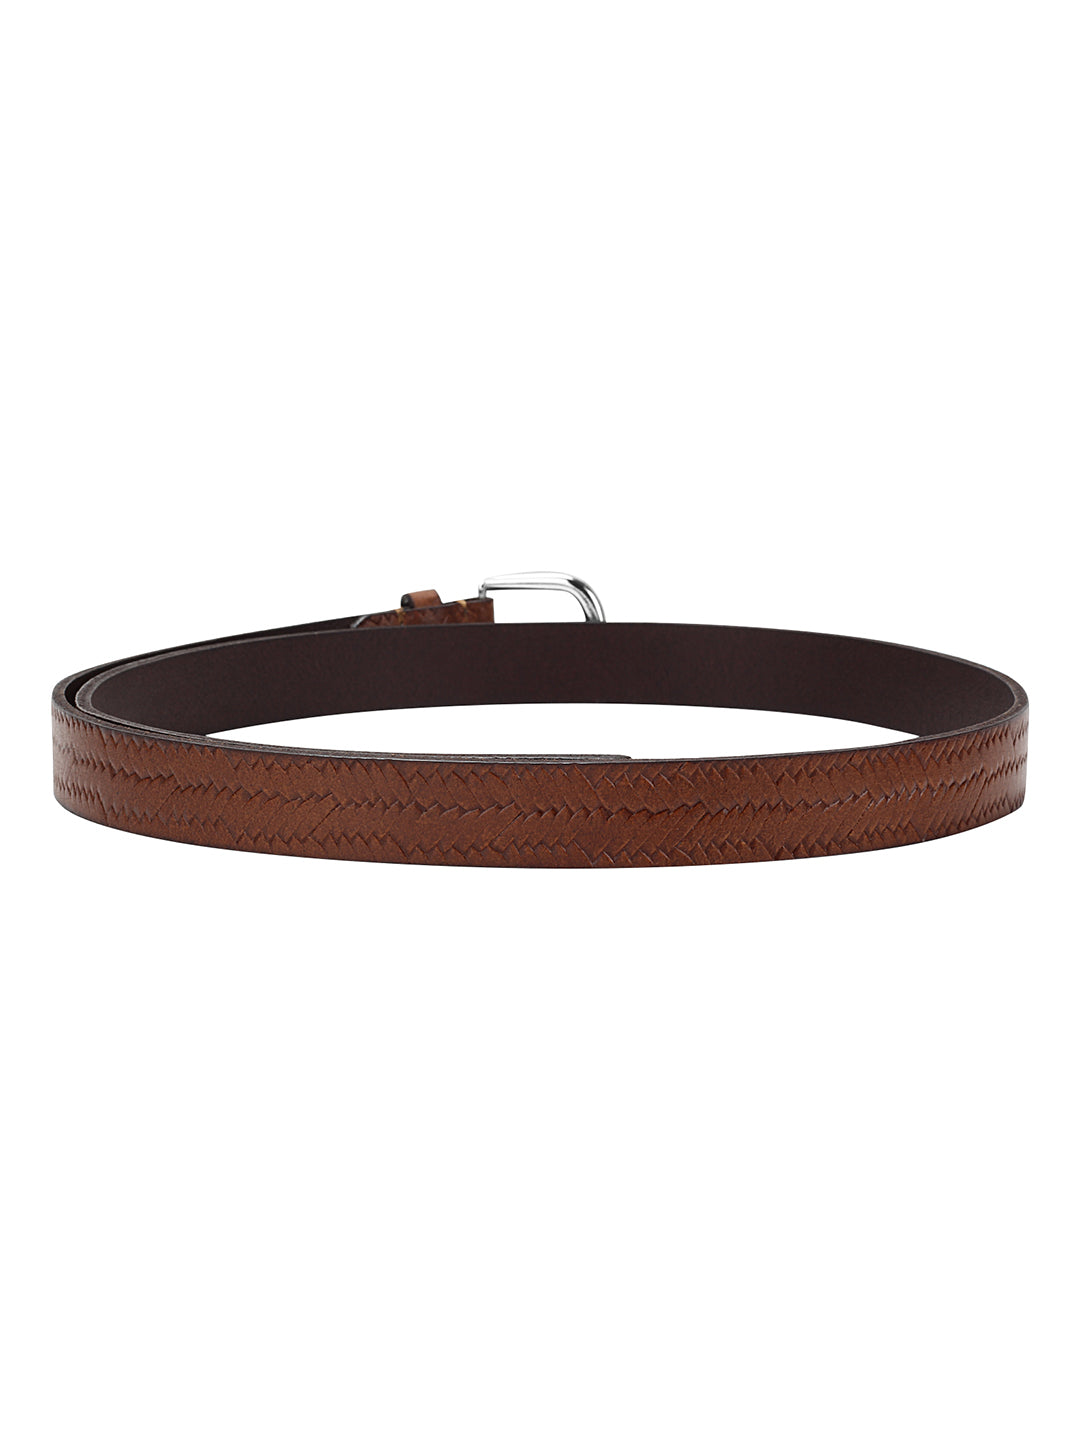 Weave pattern embossed brown belt